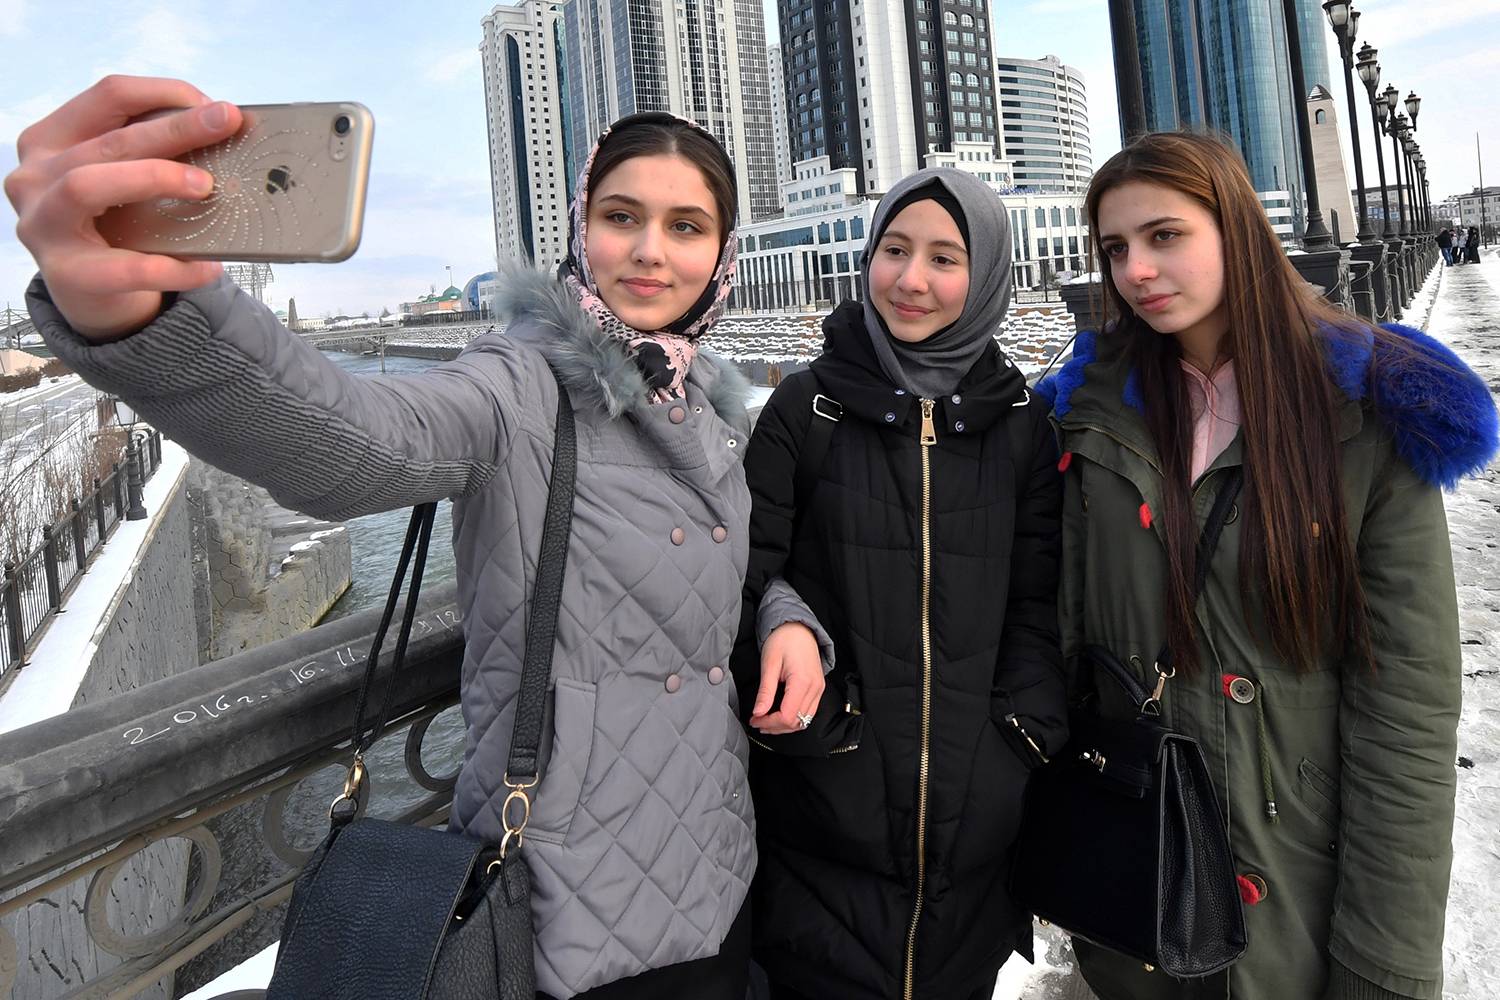 Эти туристки приехали в Грозный посмотреть на небоскребы, или им любопытно увидеть столицу региона с наивысшим уровнем социального пессимизма? Фото: kpcdn.net